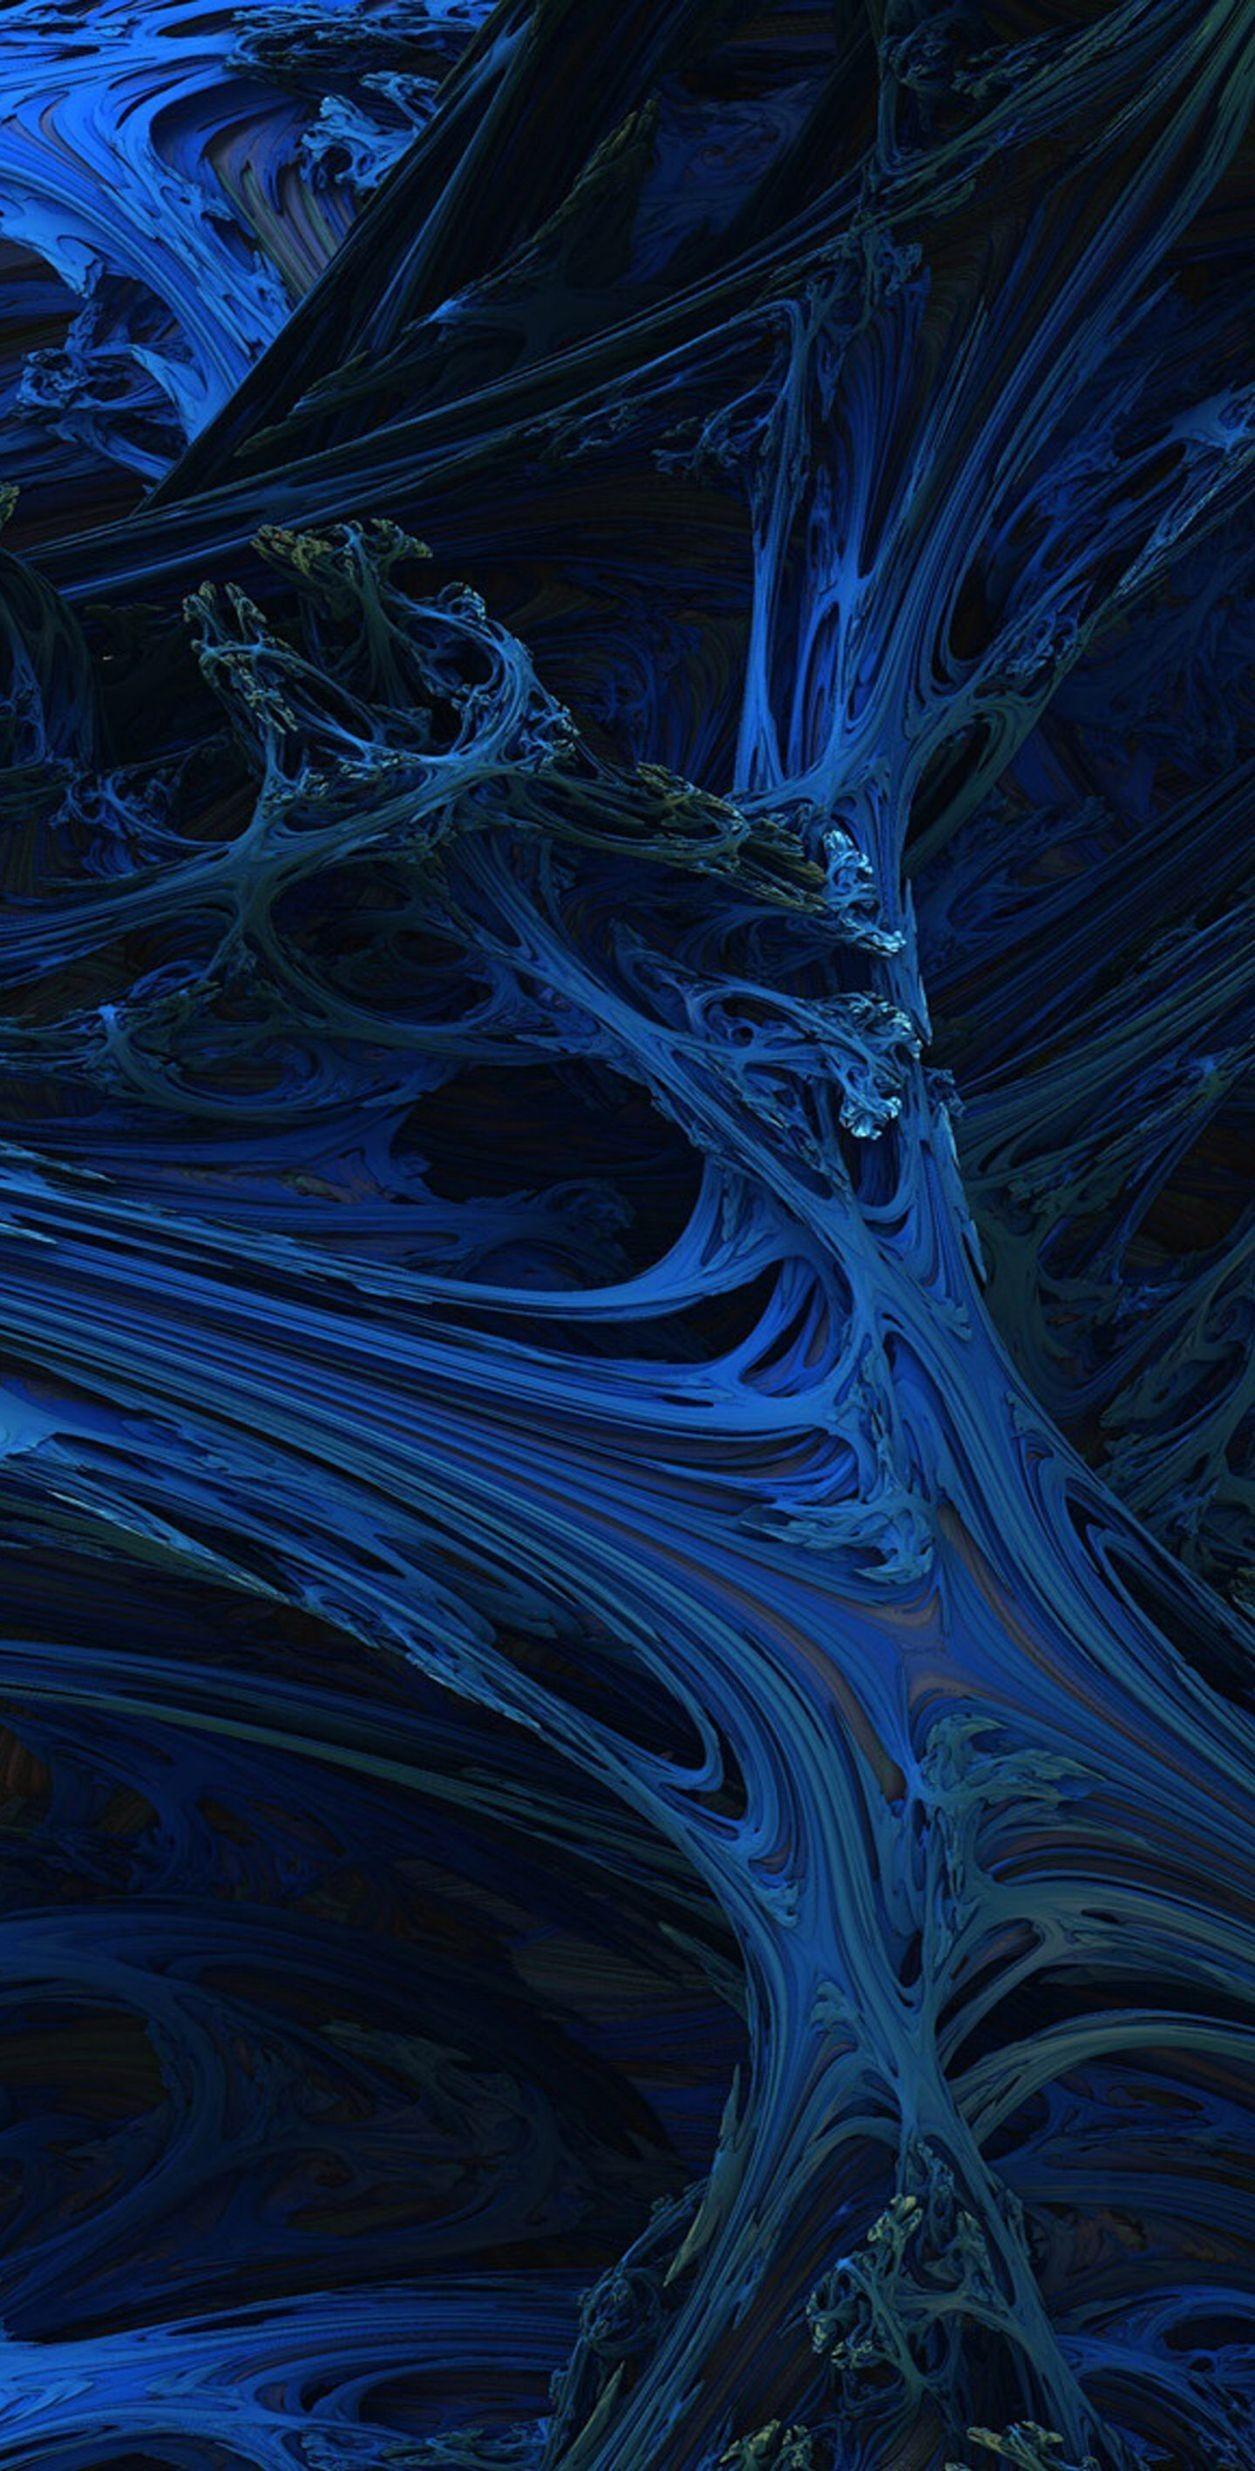 Aesthetic Dark Blue Wallpapers - Top Free Aesthetic Dark Blue